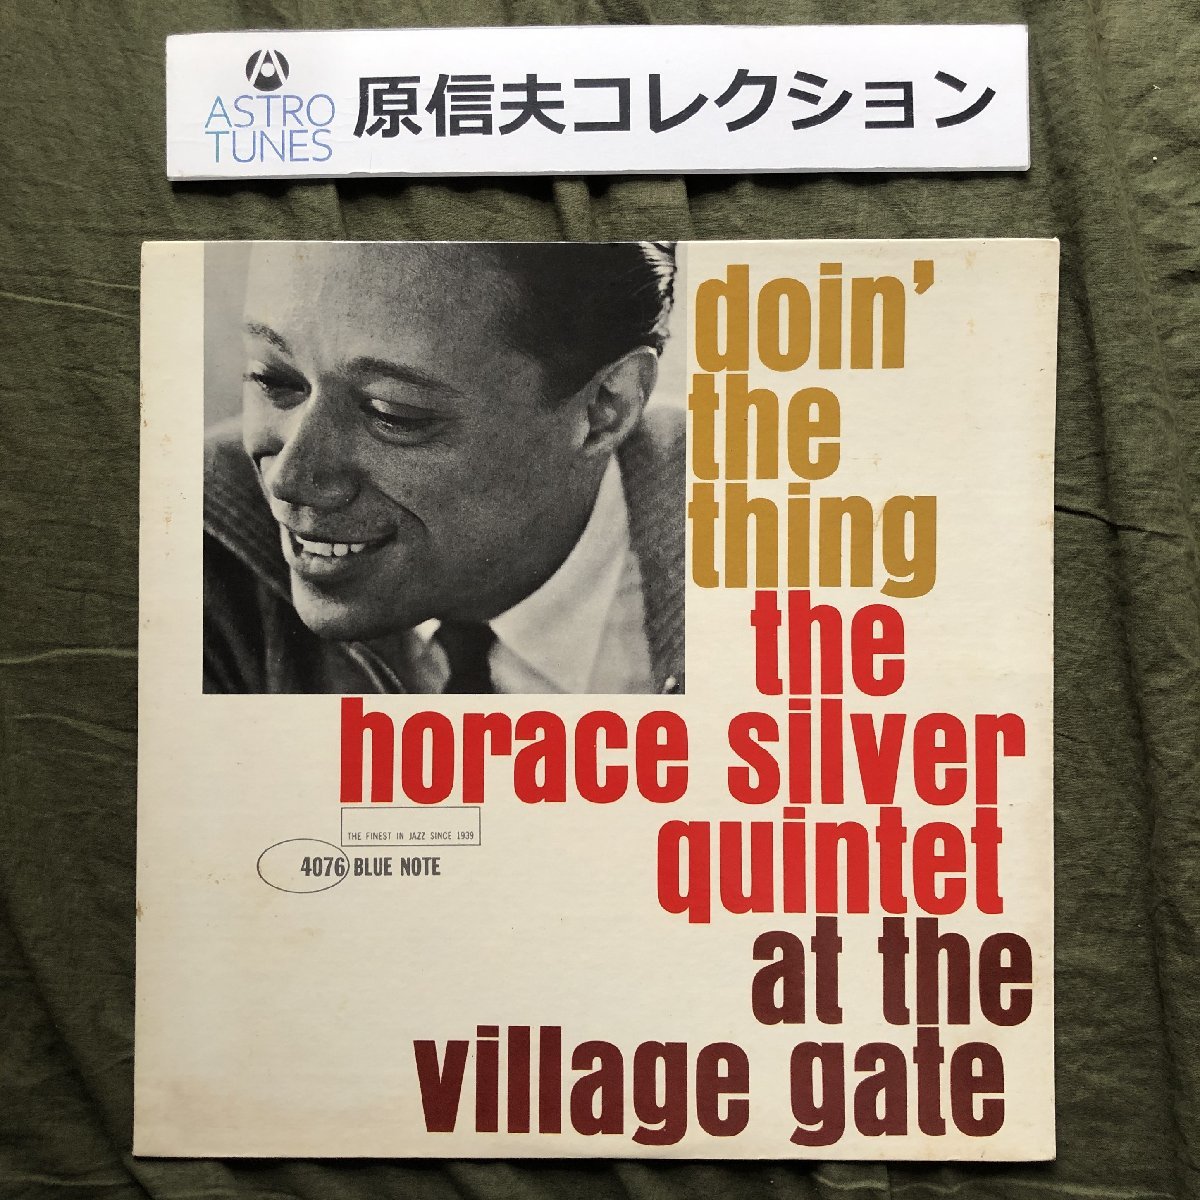 流行に  RVG刻印 1961年 米国 Gate Village The At Thing The Doin' LPレコード Quintet Silver Horace 本国オリジナルリリース盤 ジャズ一般